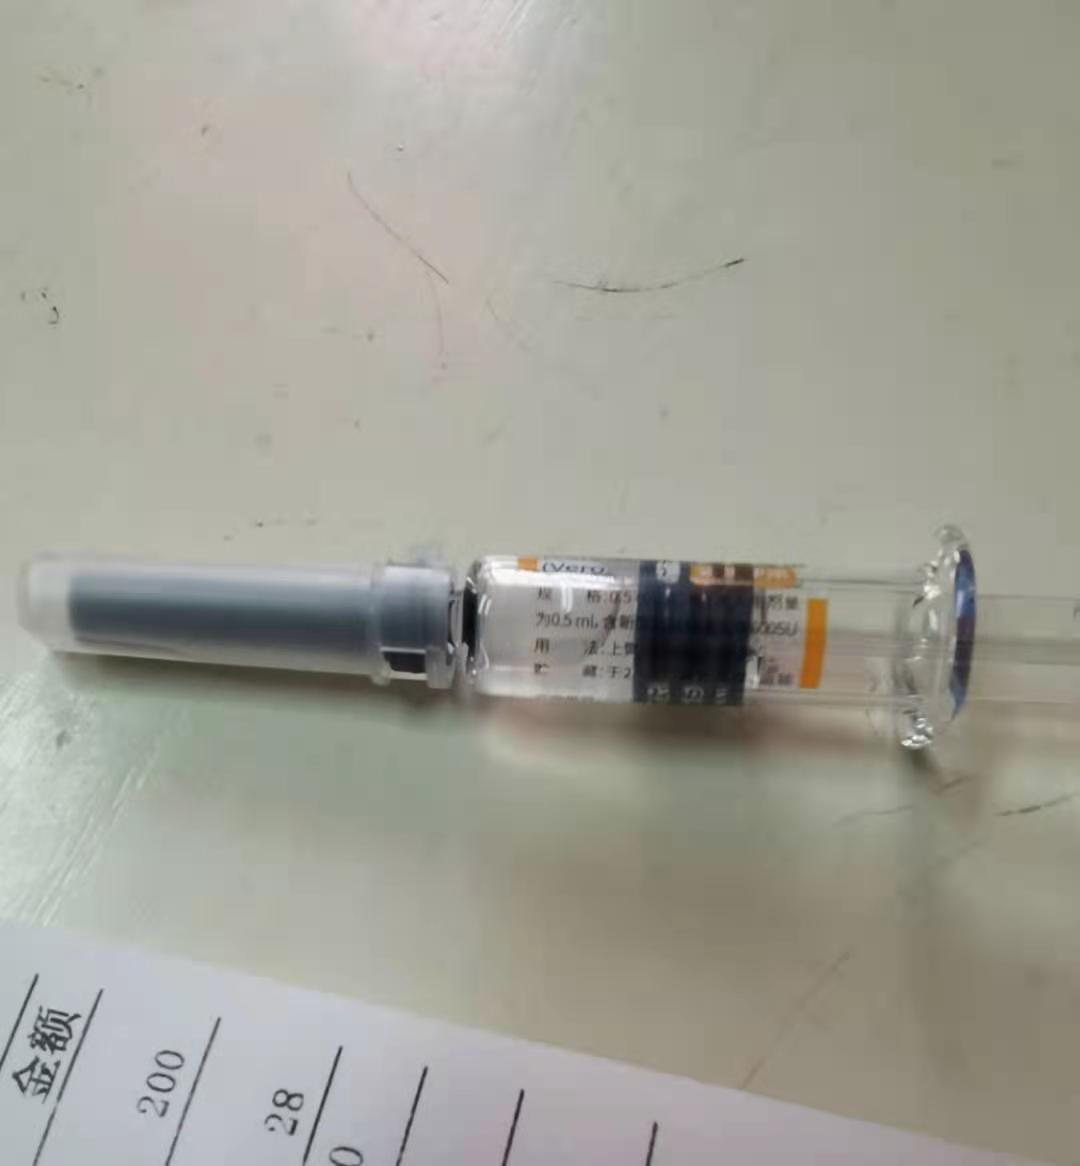 宁波紧急需求人群预约接种新冠疫苗:首针自费两百元